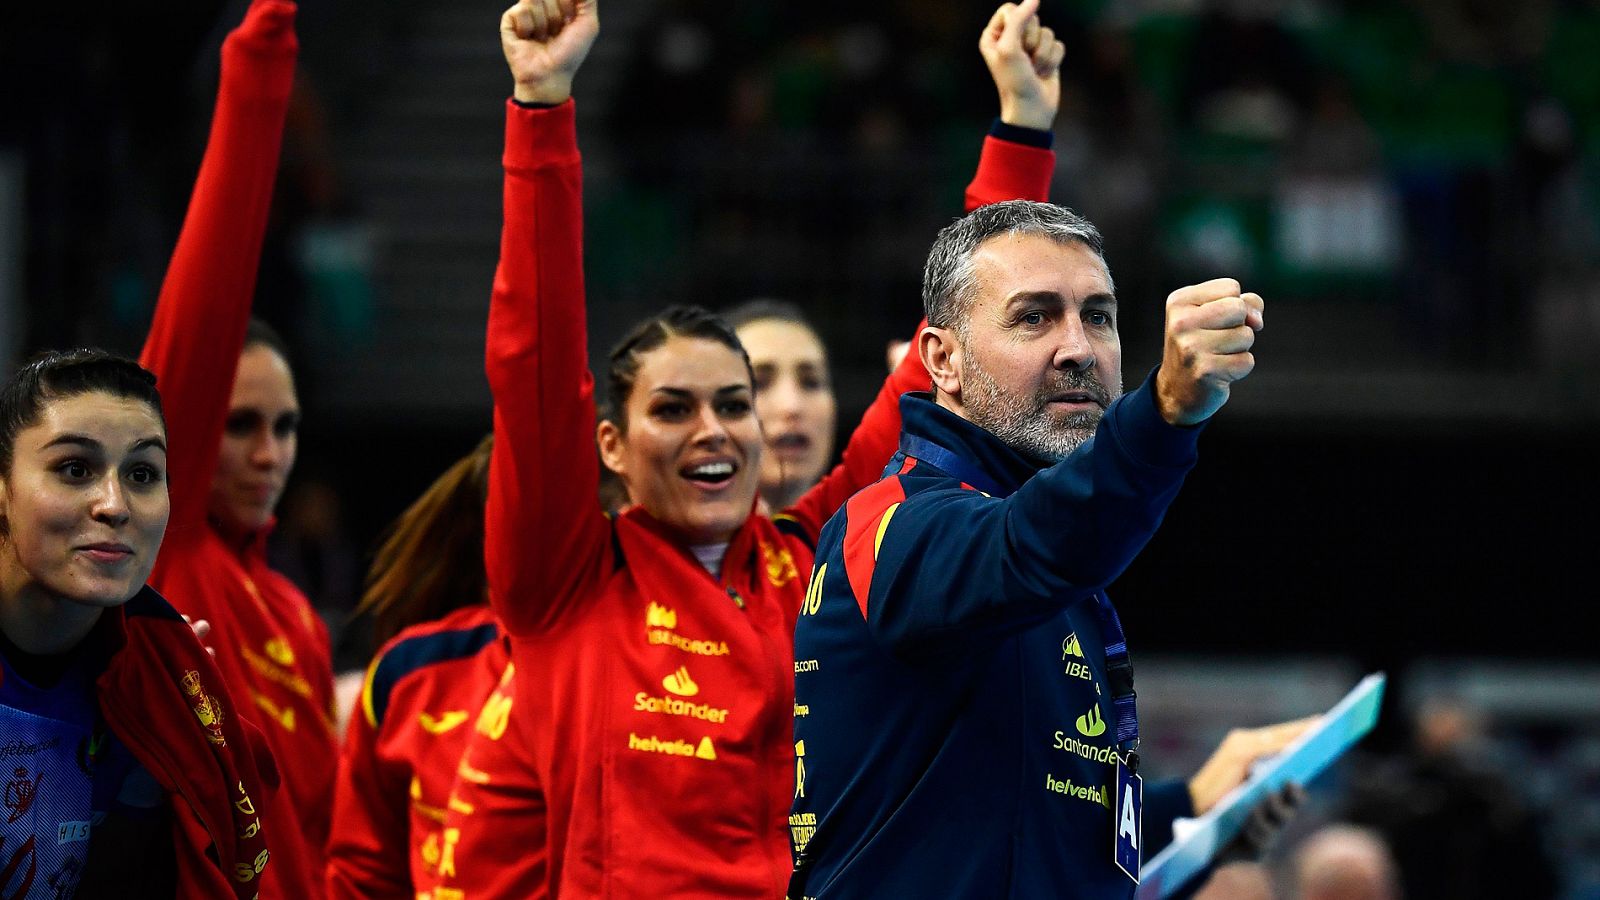 Mundial balonmano | Carlos Viver celebra el pase a la final del Mundial - rtve.es